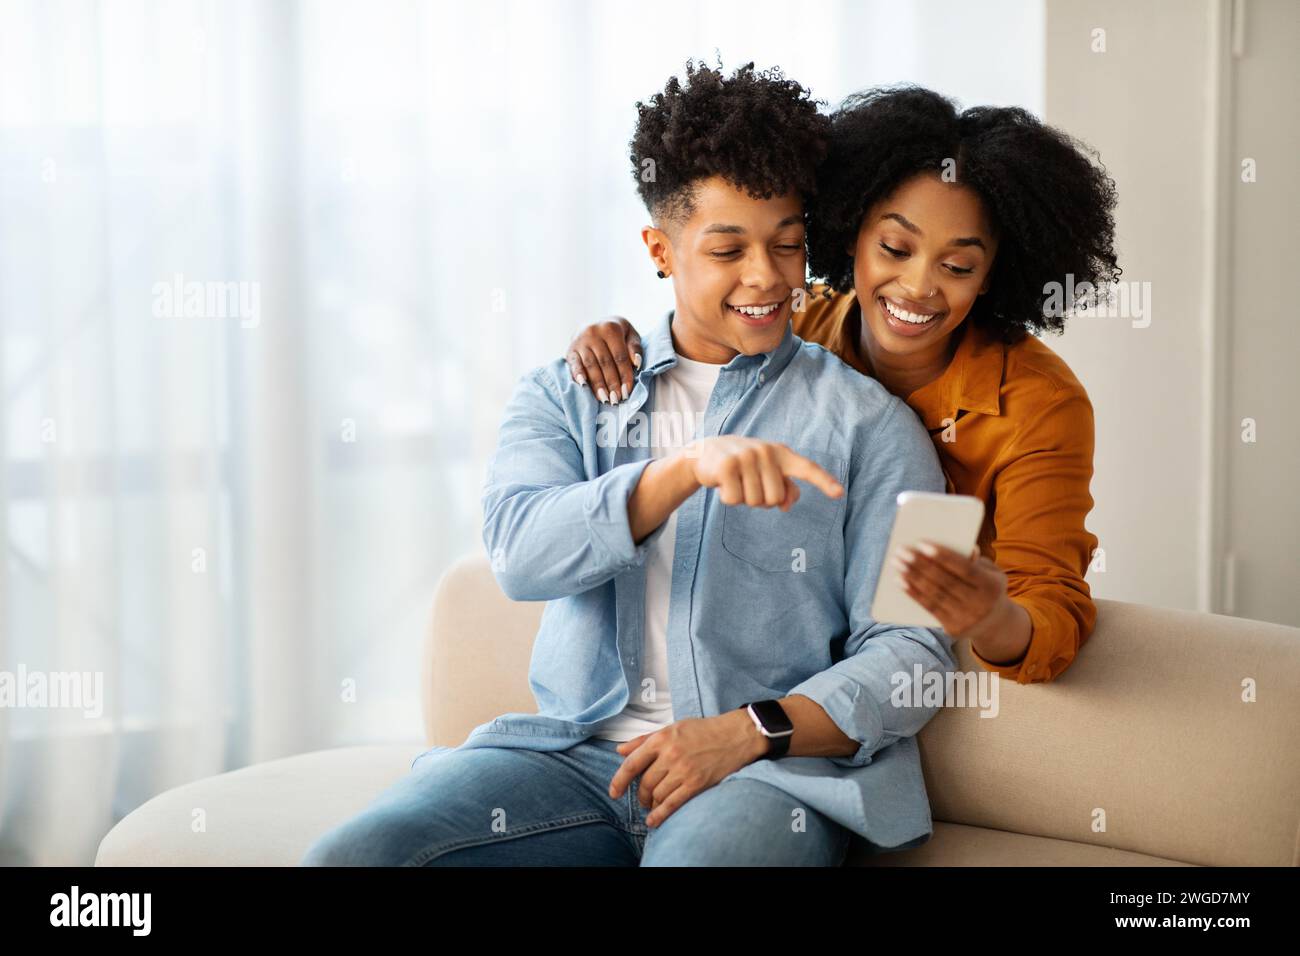 Un giovane uomo con una camicia in denim e una donna con un top di senape sono seduti su un divano Foto Stock